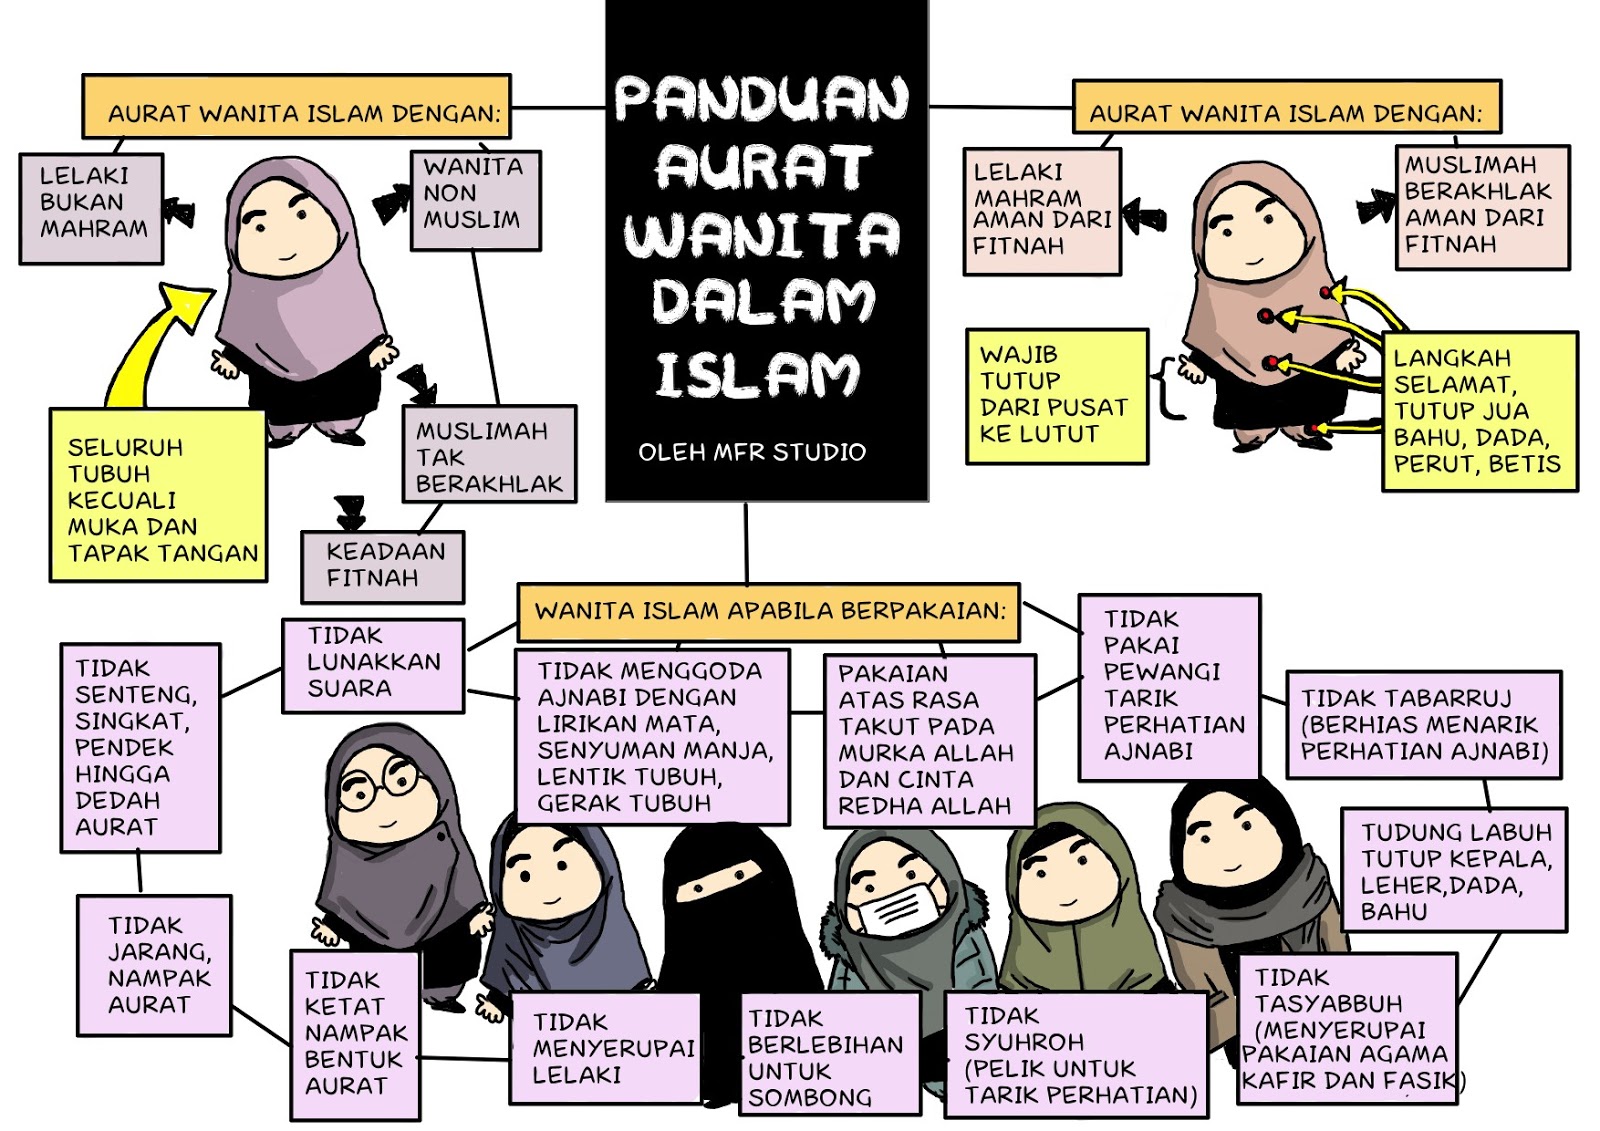 Panduan Aurat Wanita Dalam Islam